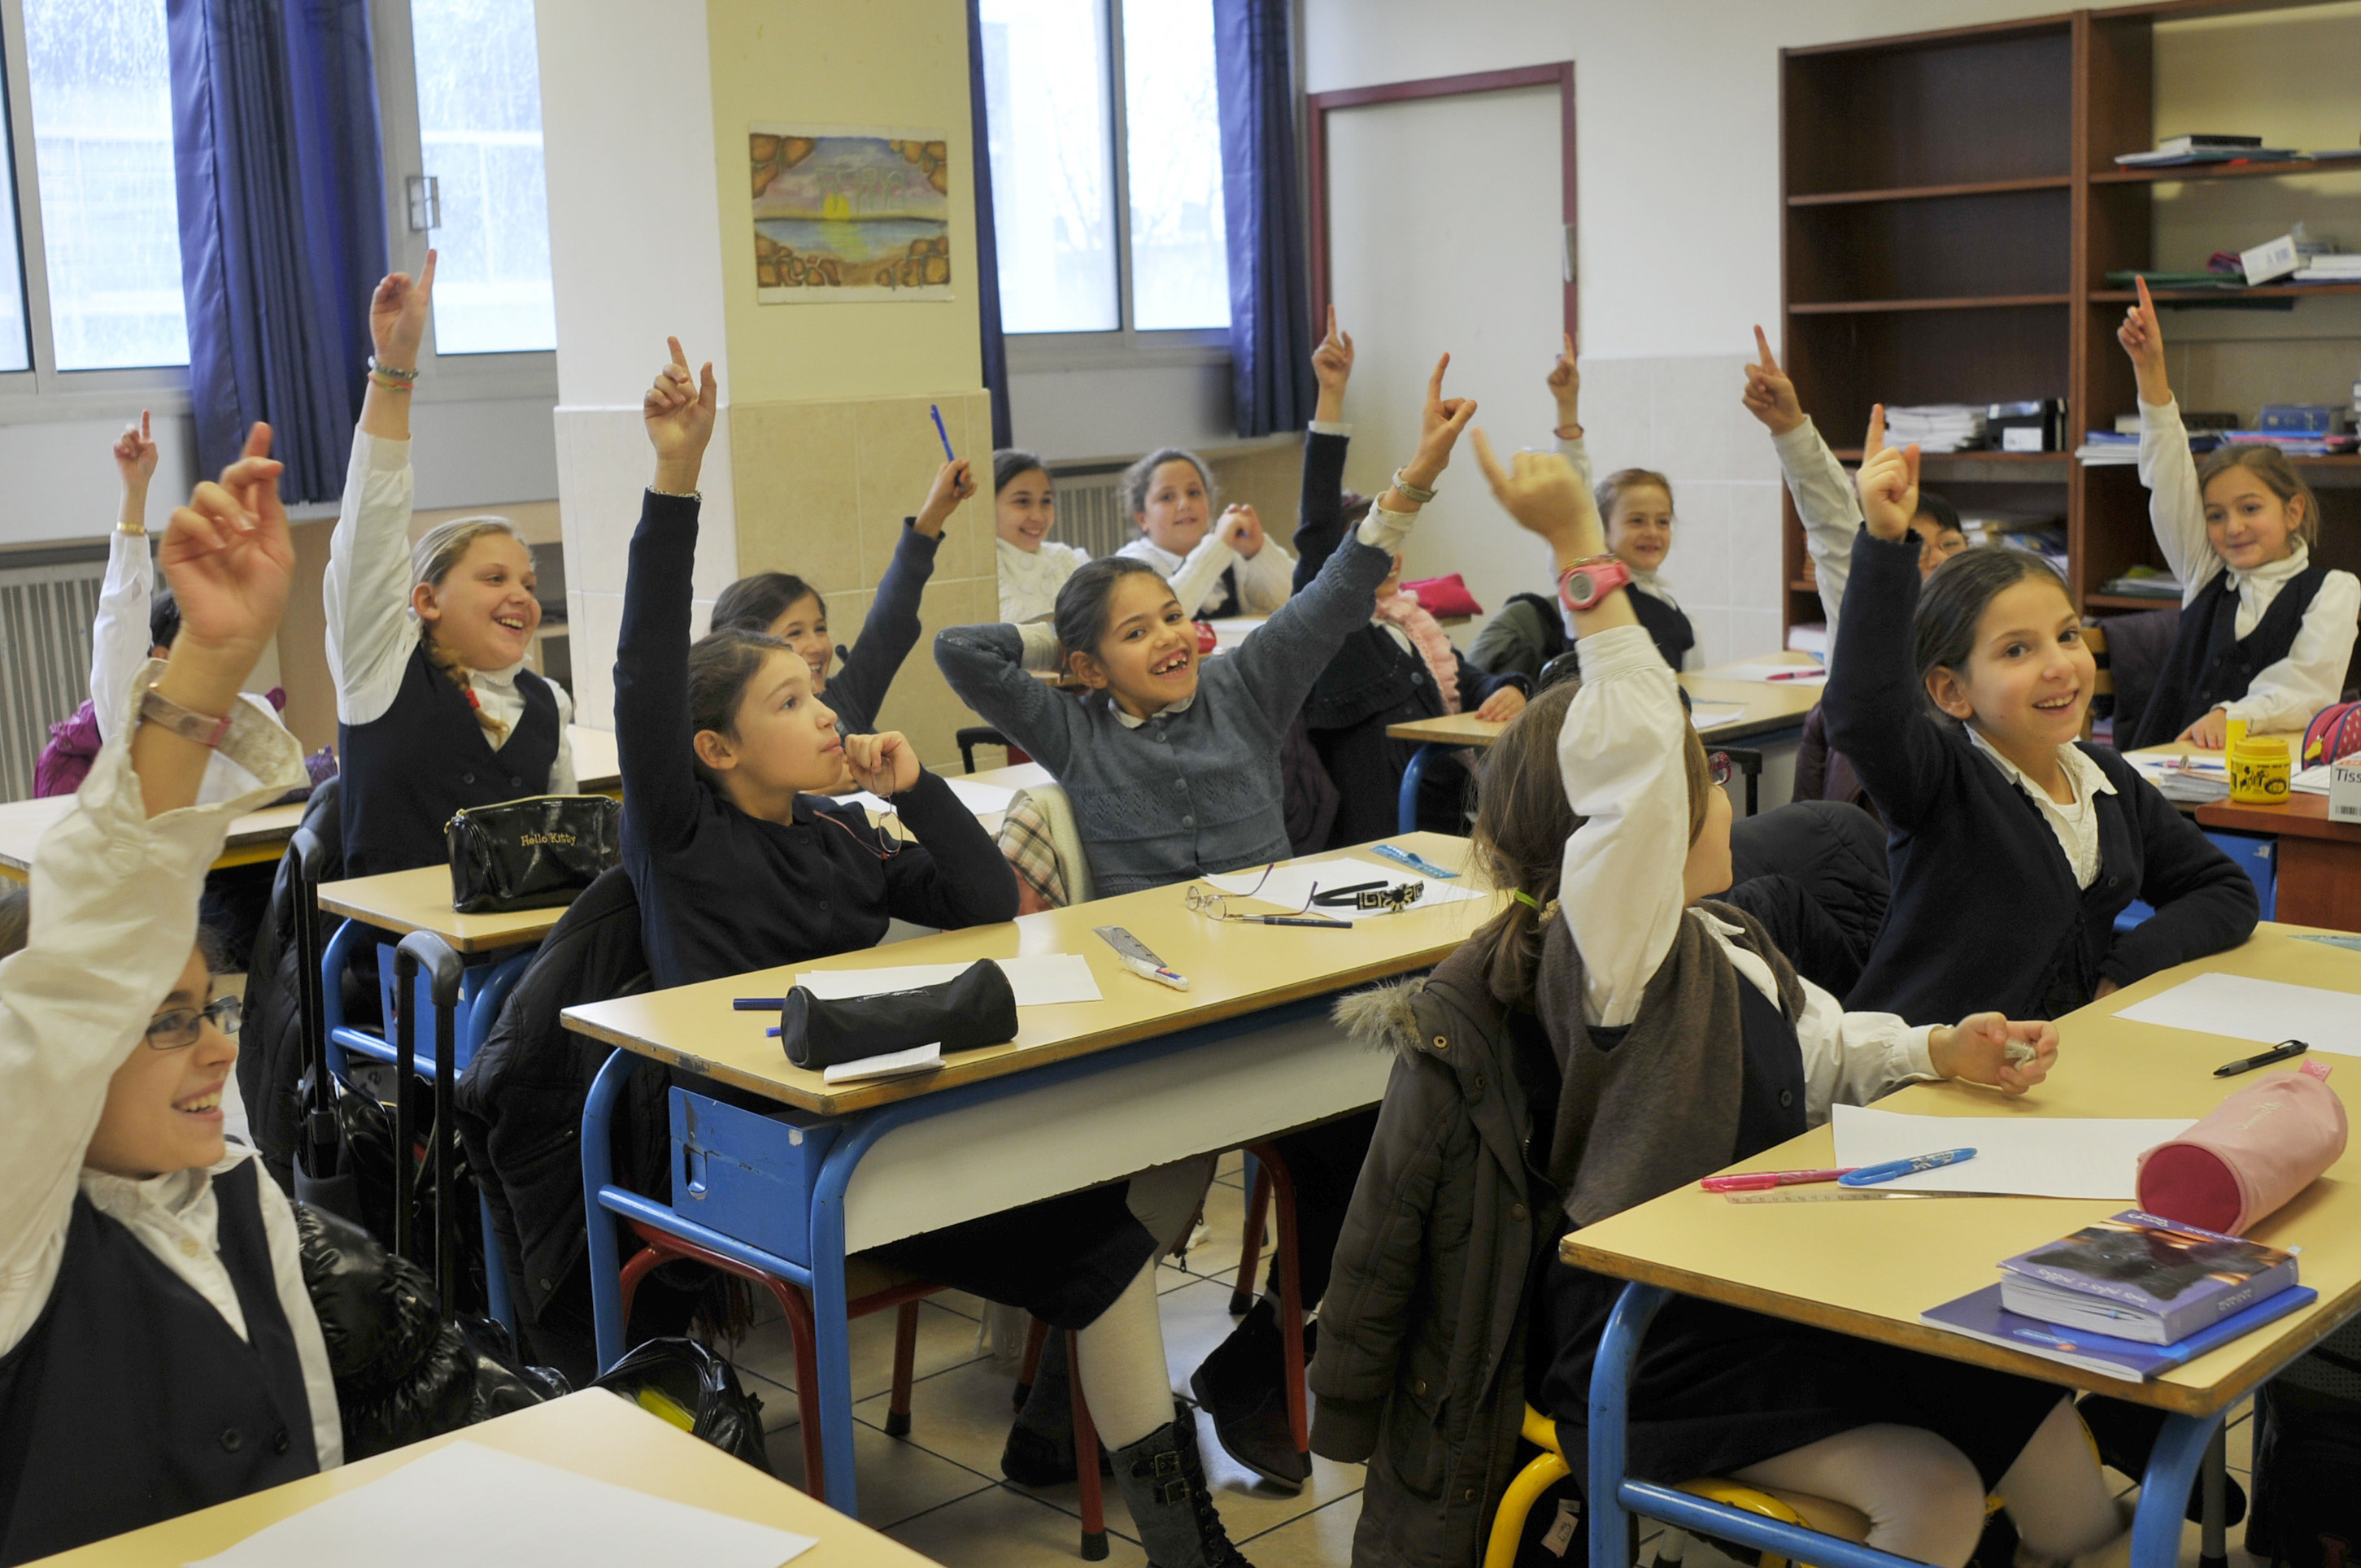 De bonnes nouvelles venant de la communauté juive française : les écoles les mieux classées